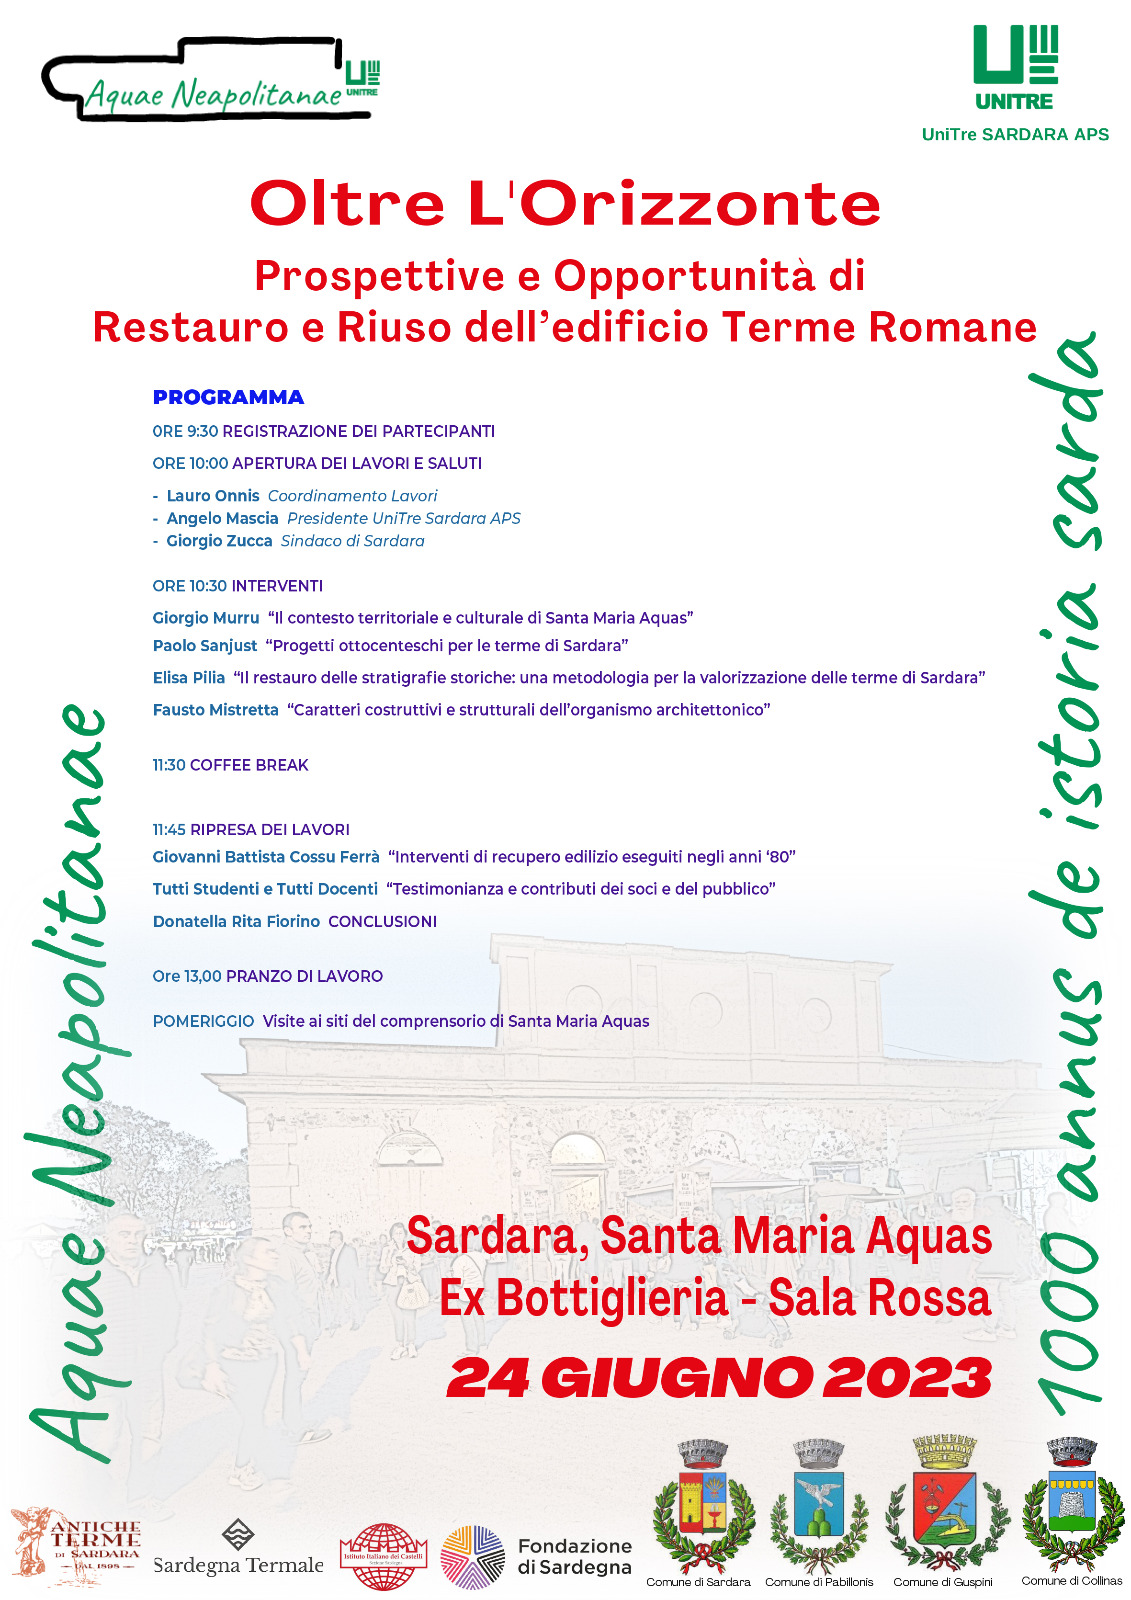 Oltre l’Orizzonte, Prospettive e Opportunità di Restauro e Riuso dell’edificio Terme Romane